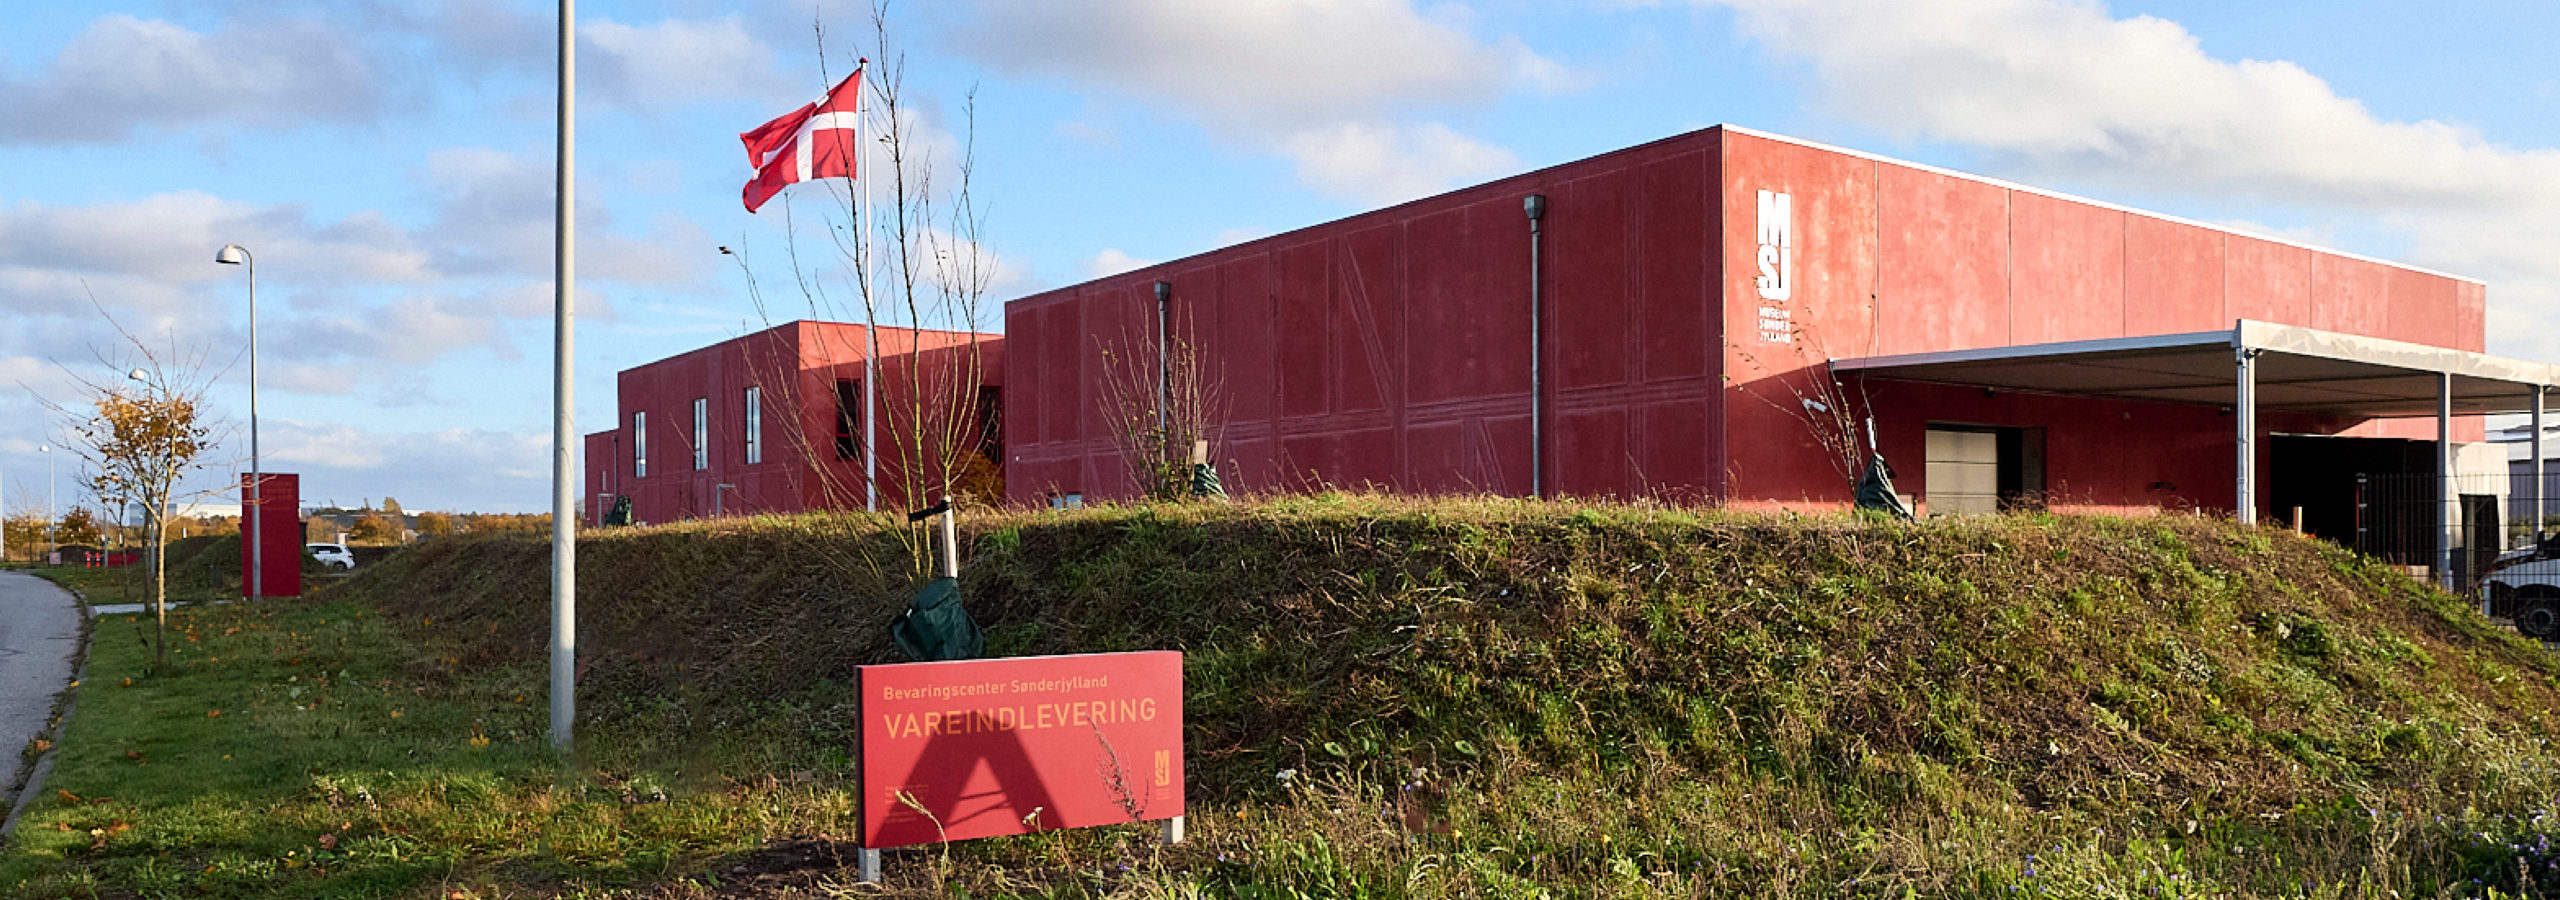 OMVISNING: Bevaringscenter Sønderjylland – Fuldt booket